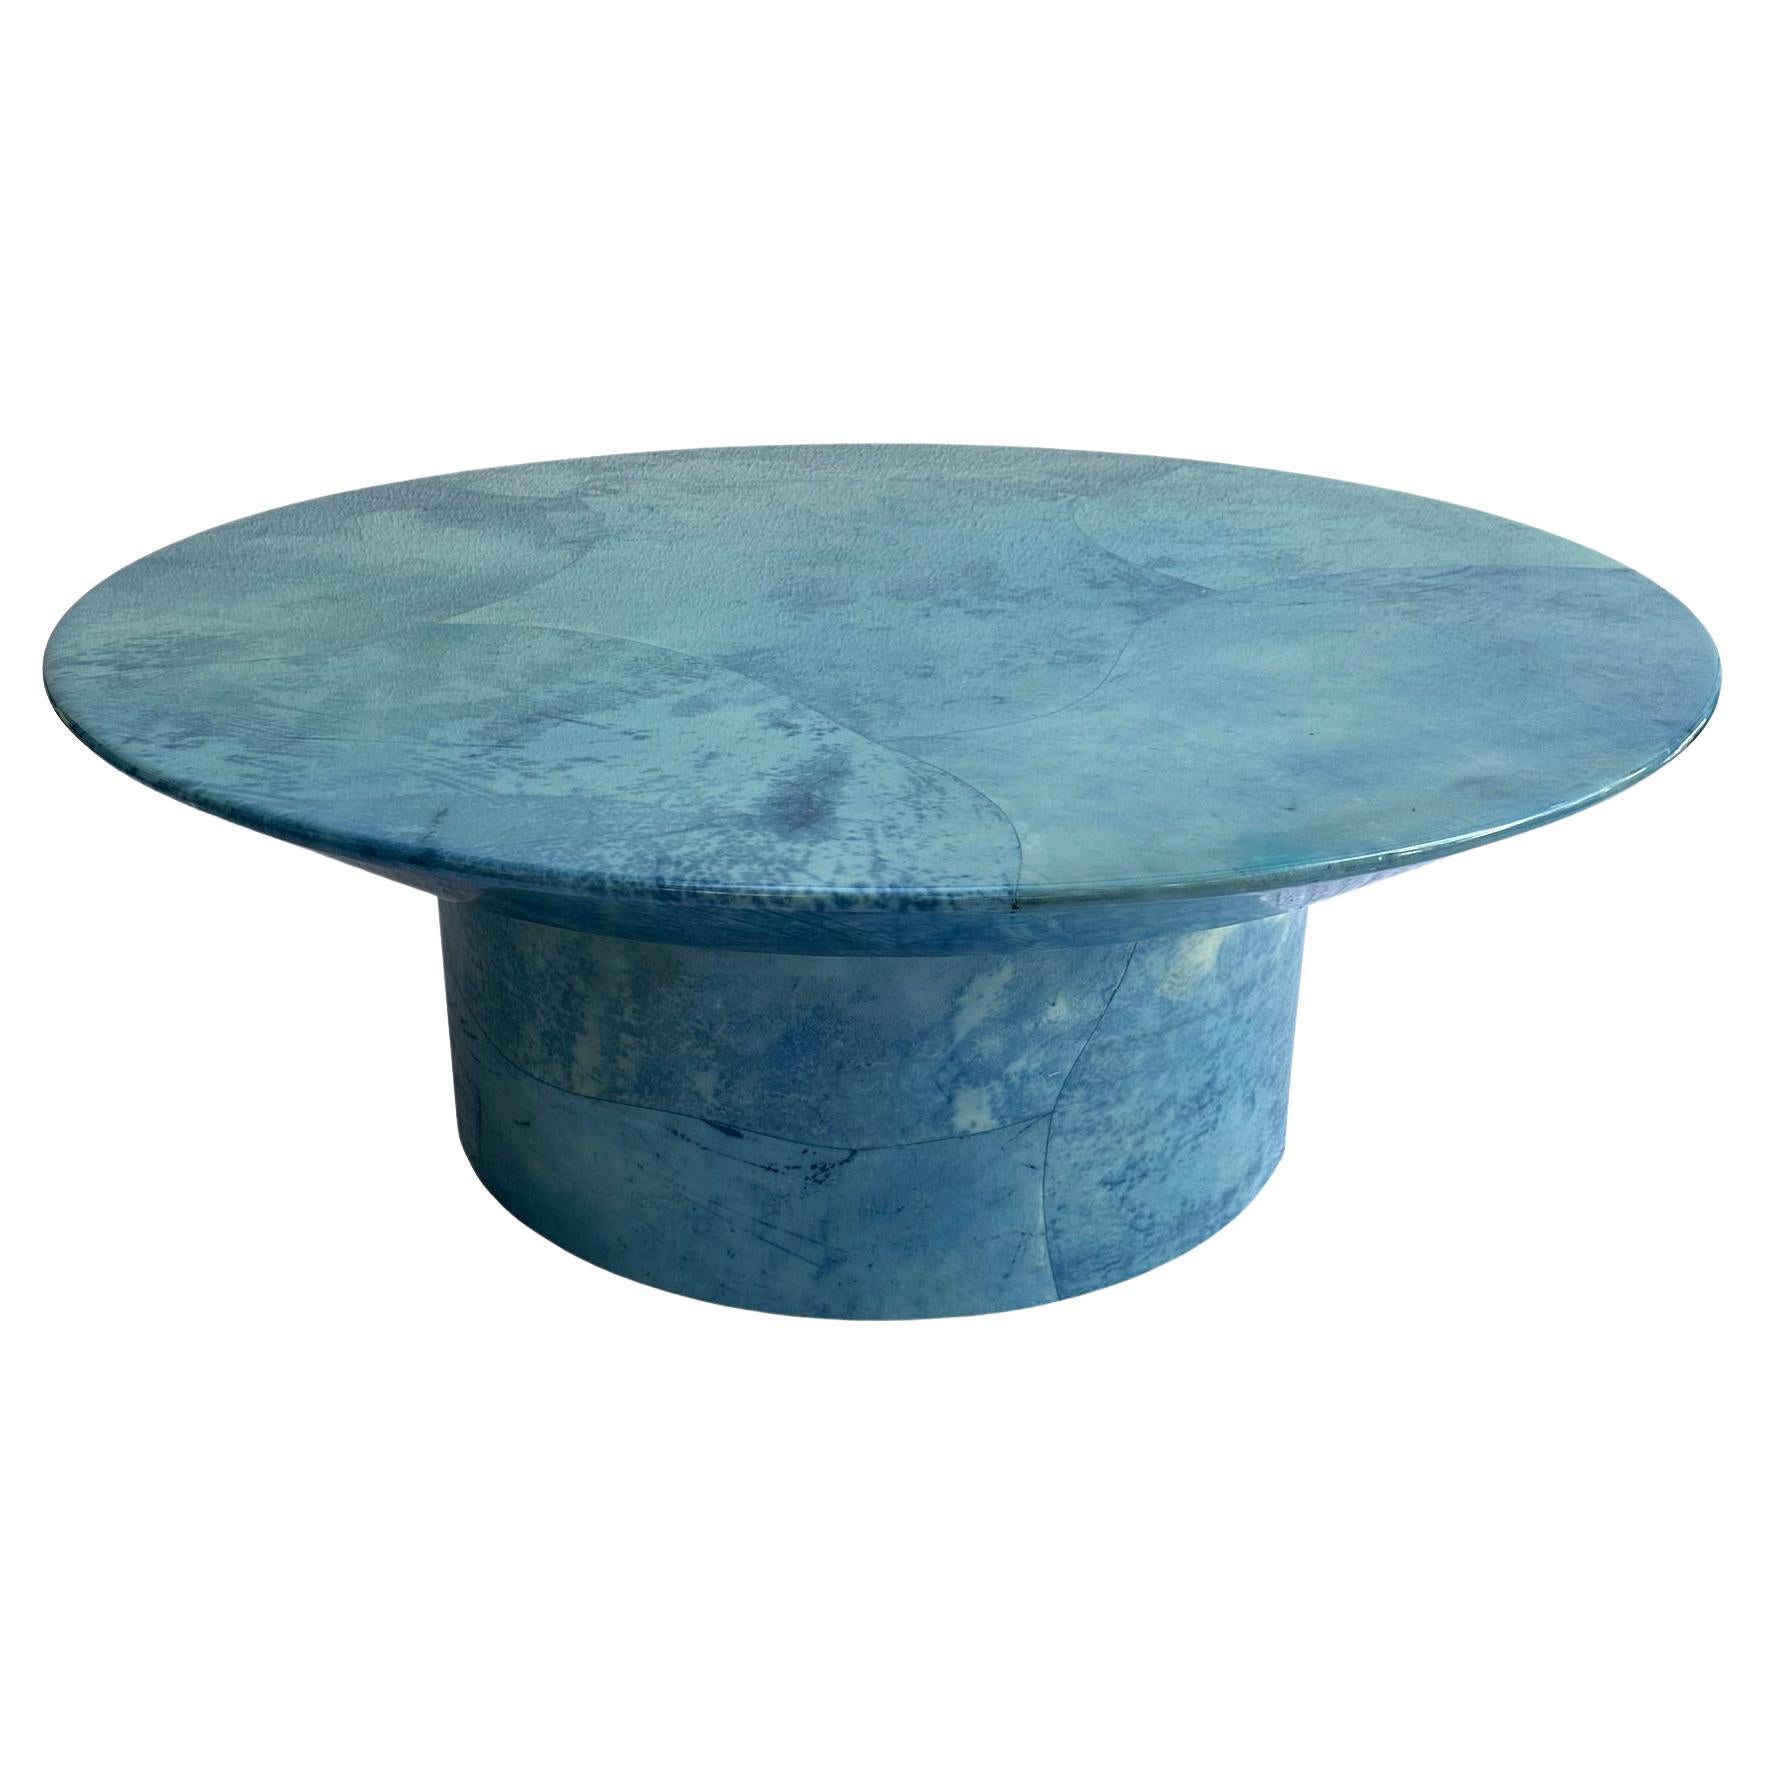 Table basse en peau de chèvre bleue Post Modern